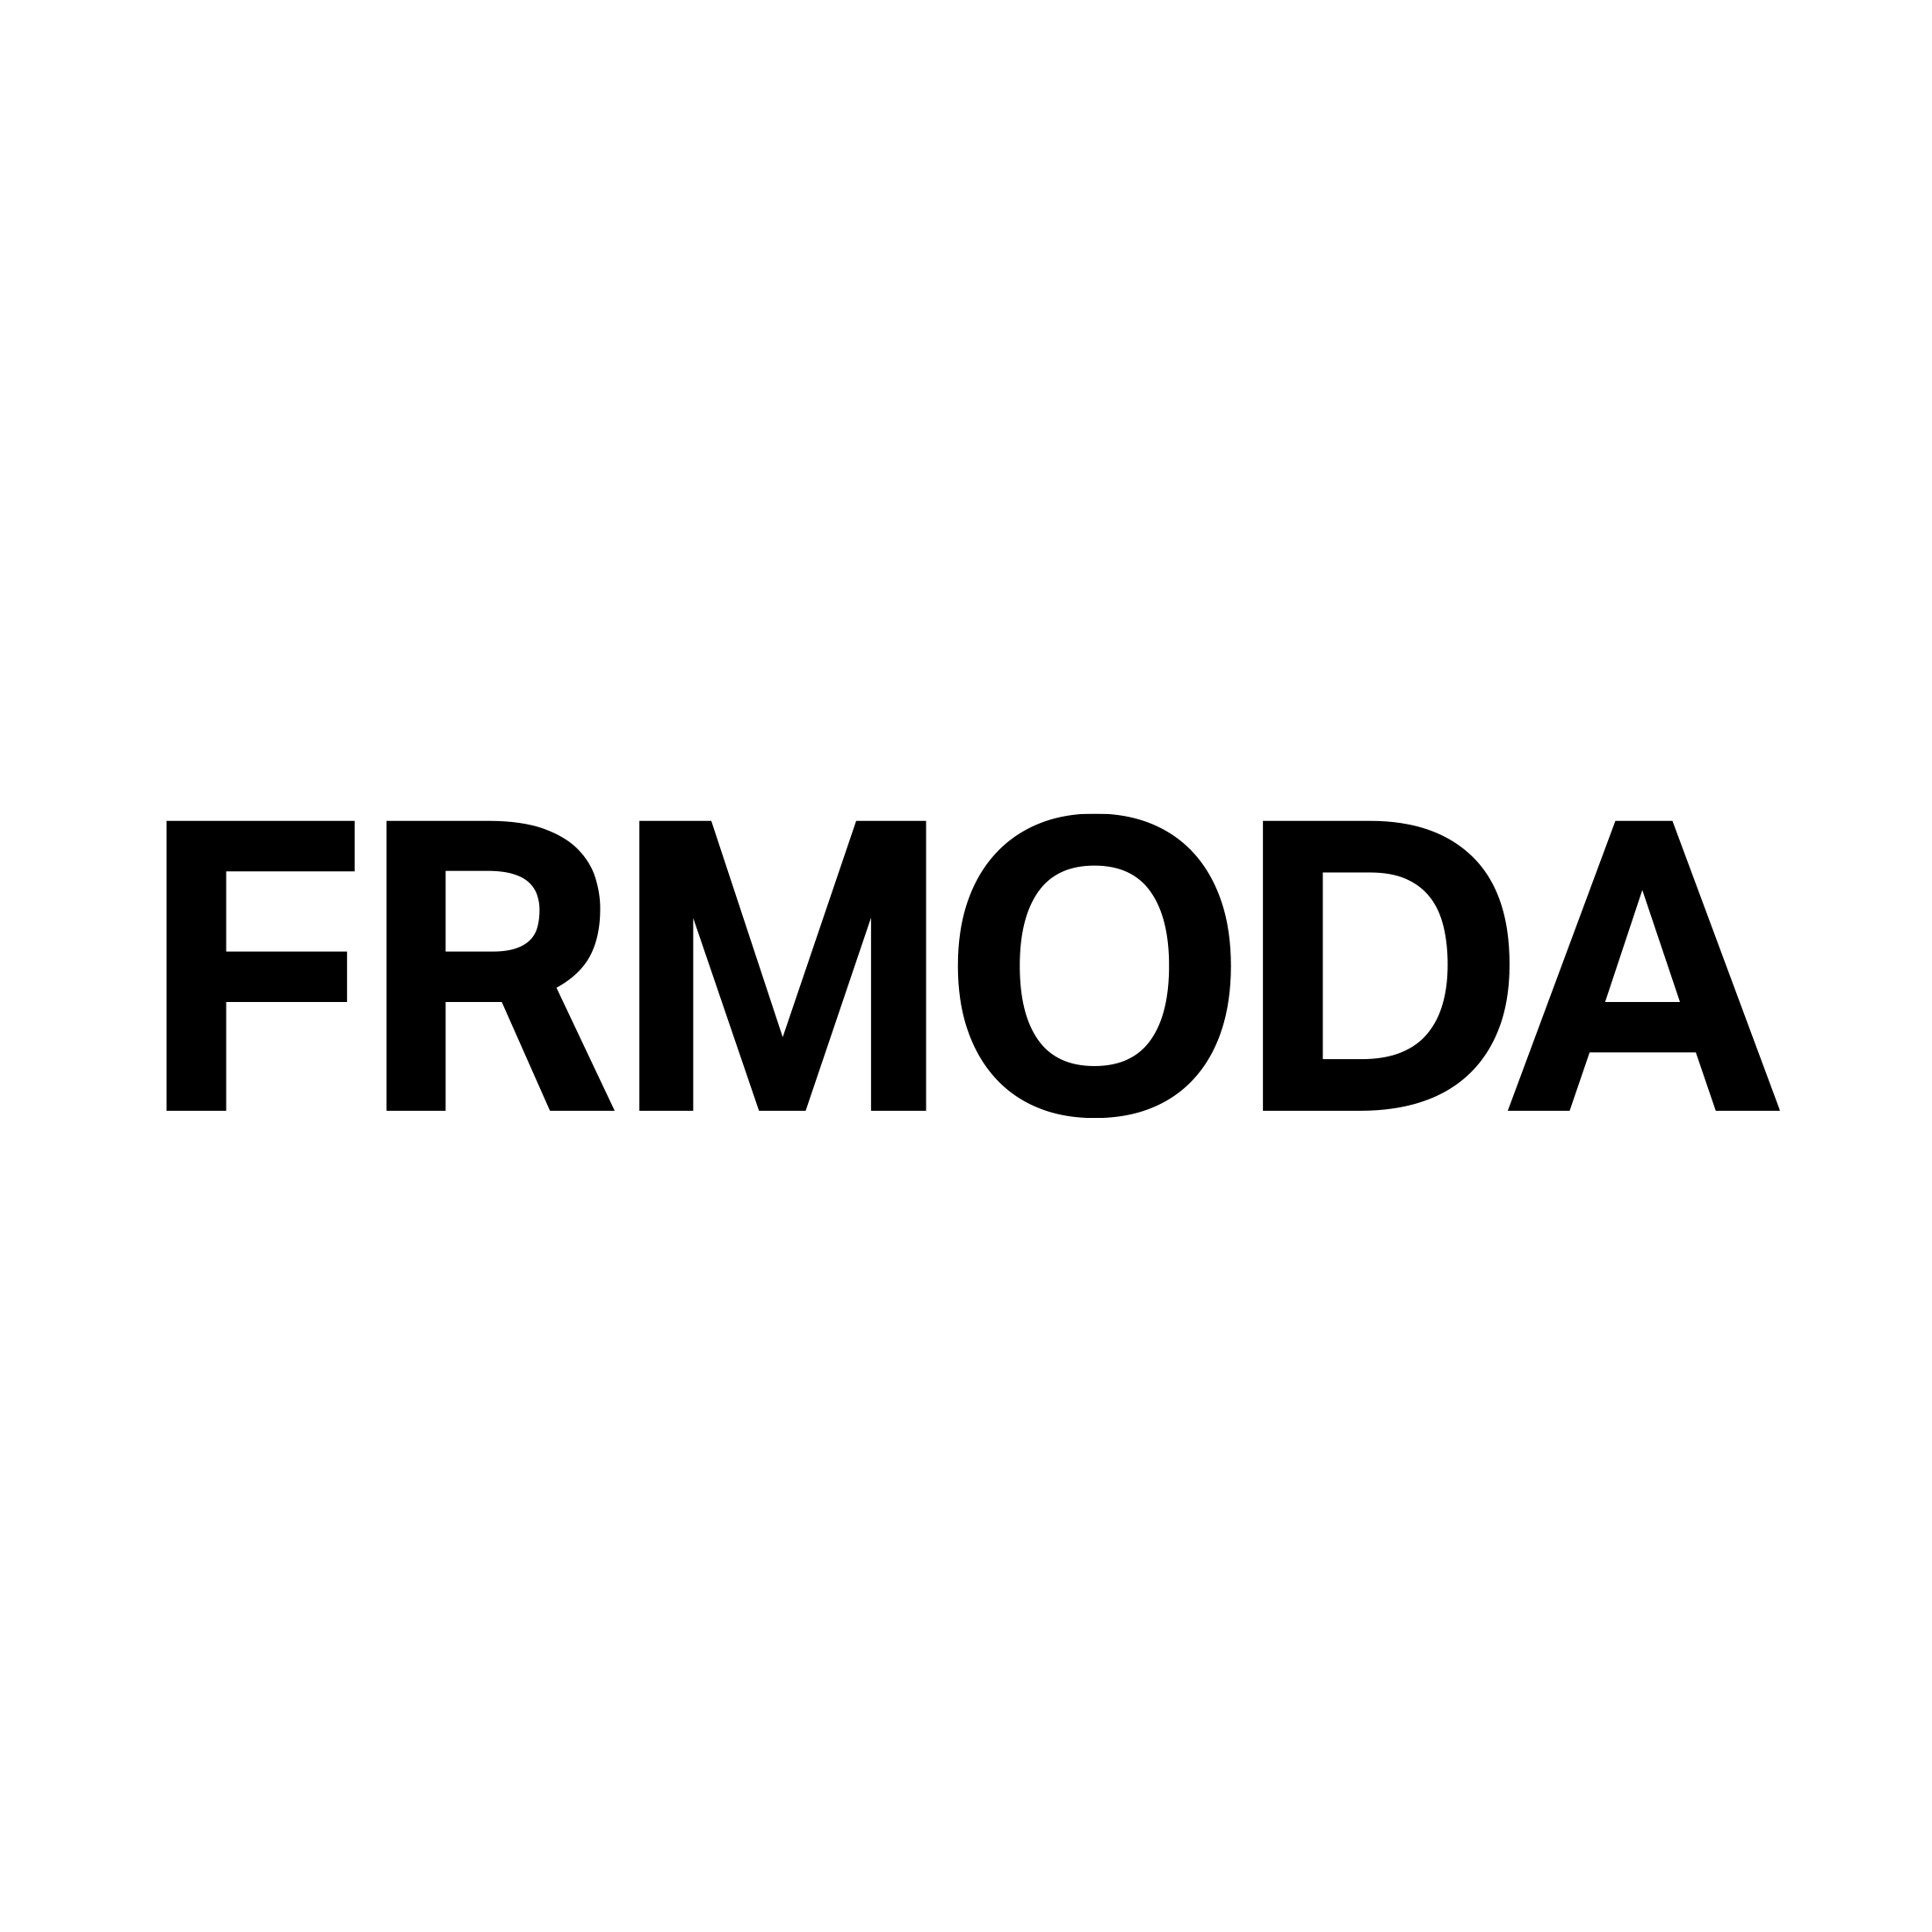 Frmoda Coupons & Promo Codes